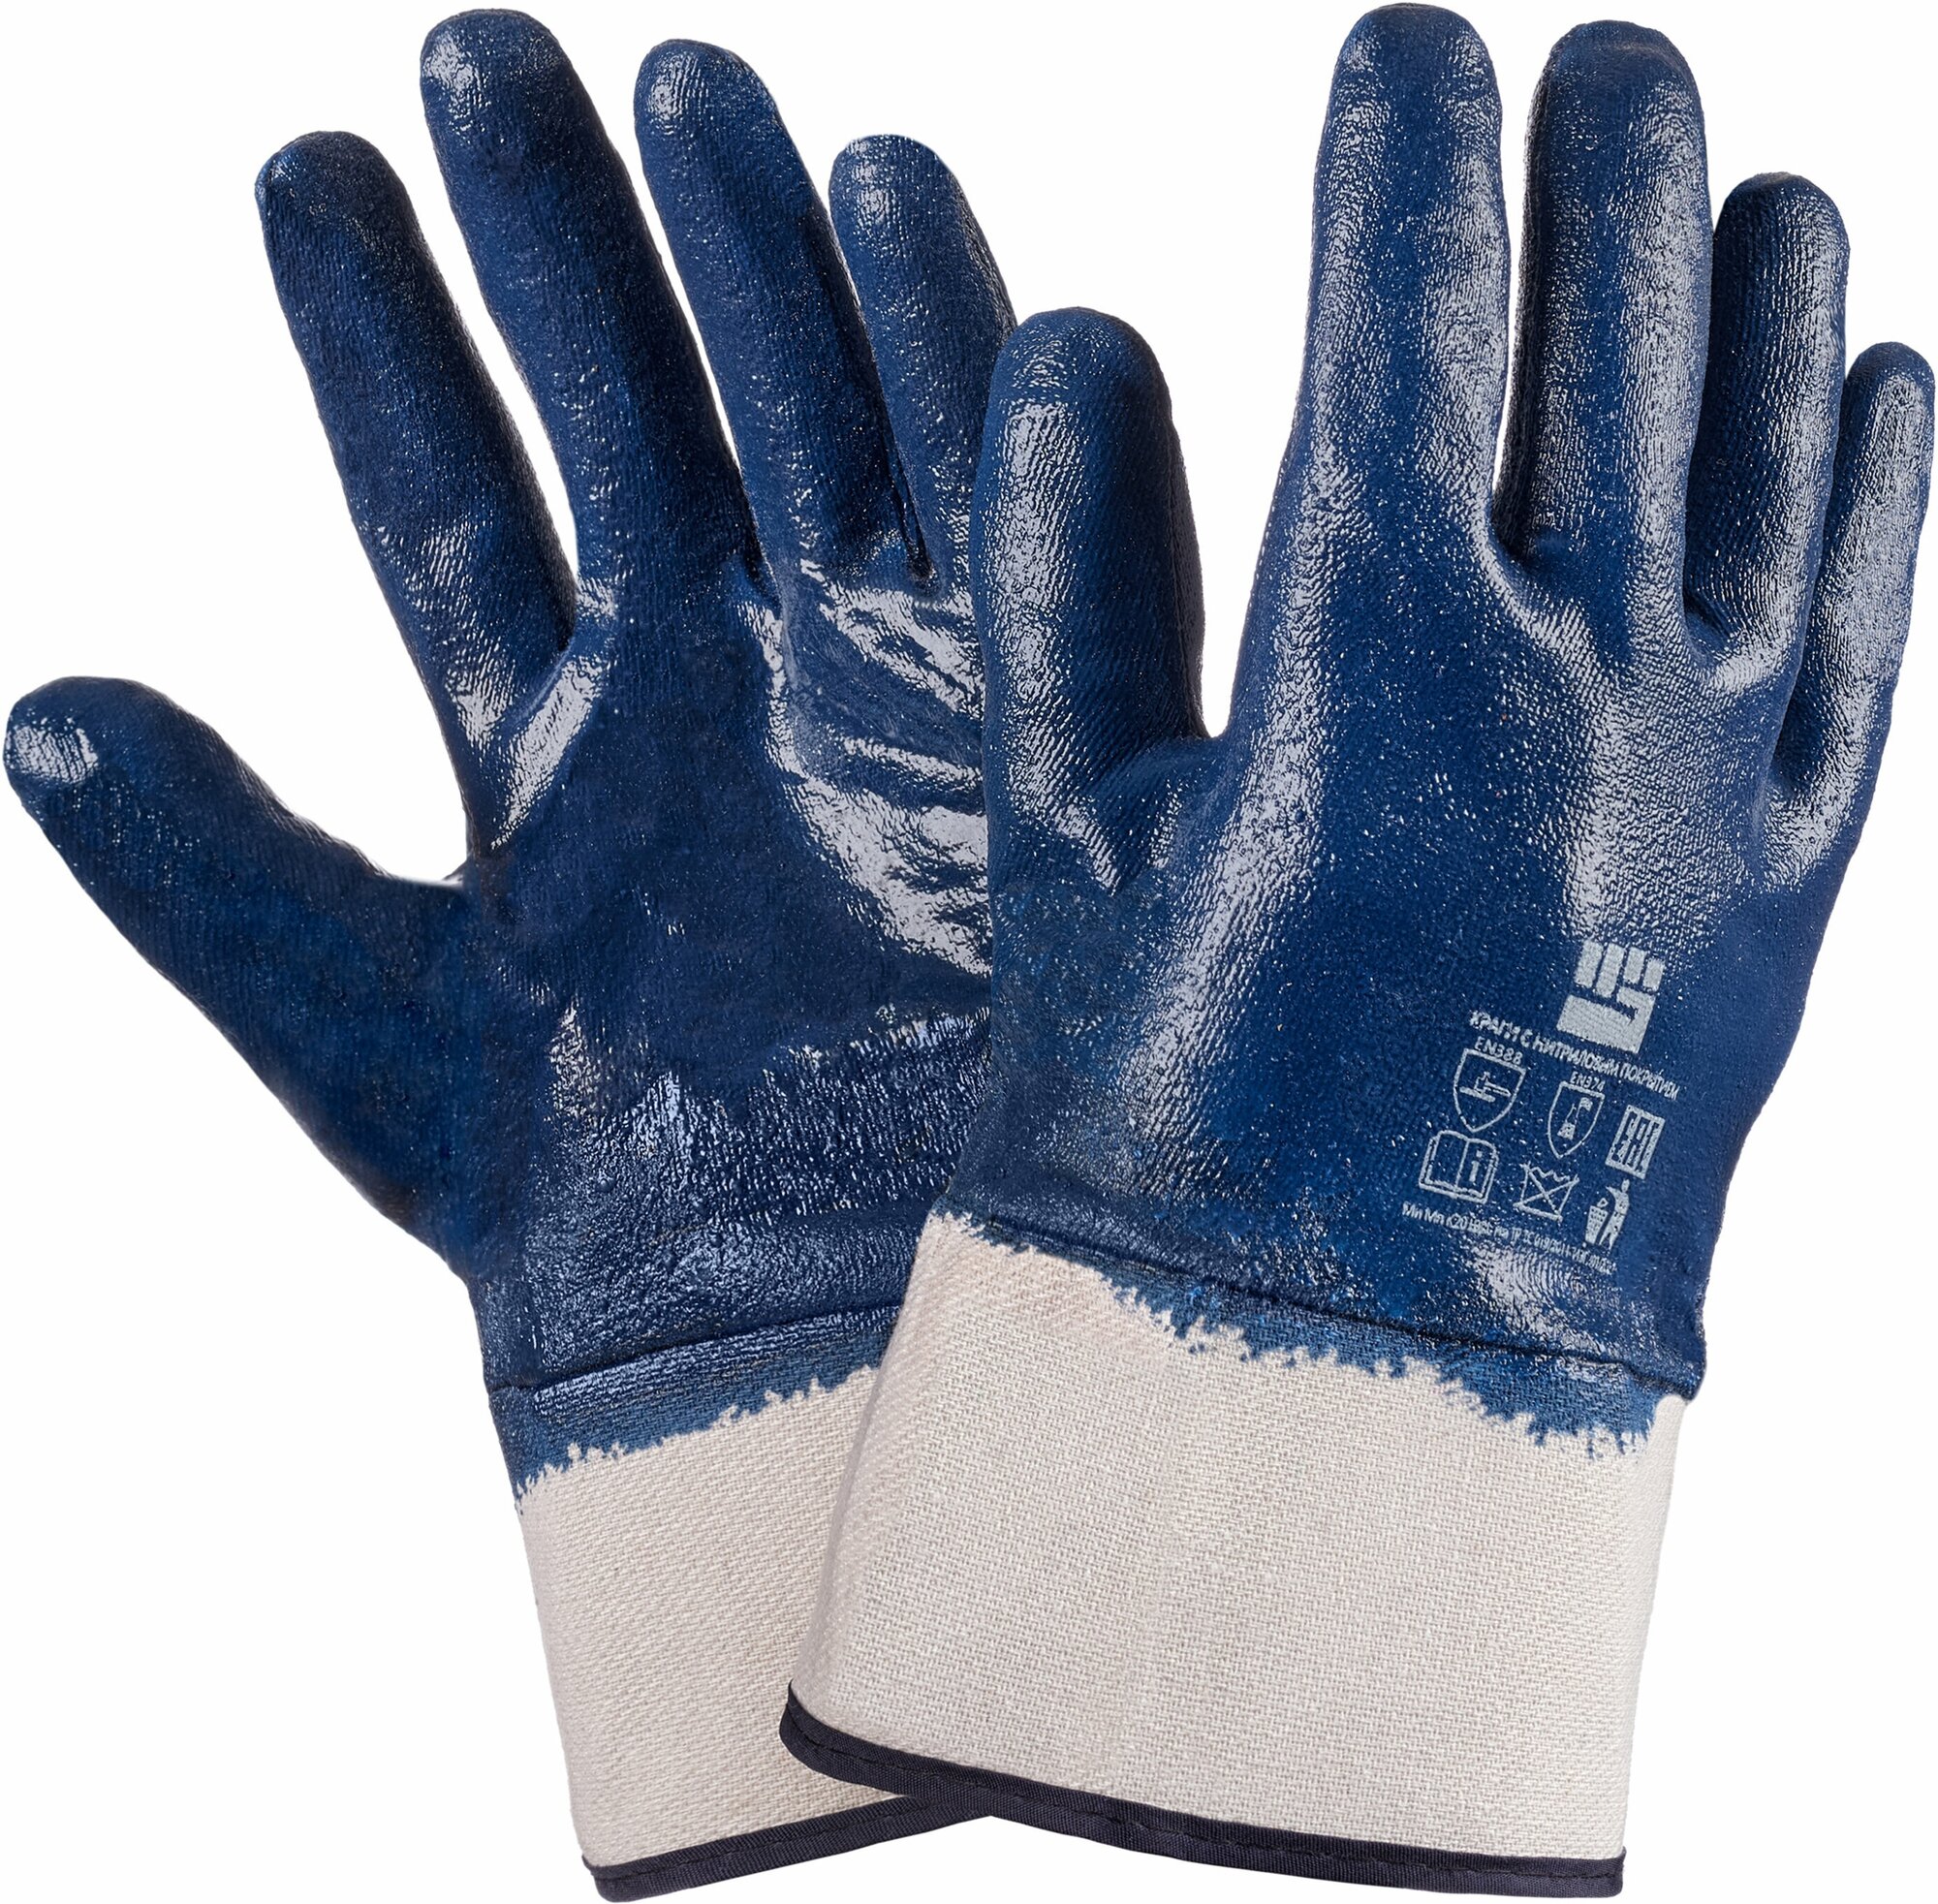 Перчатки маслобензостойкие, нитриловые, перчатки мужские, перчатки хозяйственные, перчатки рабочие, перчатки строительные, рабочие перчатки, перчатки рабочие защитные, перчатки для работы, краги МБС, синие 1 пара